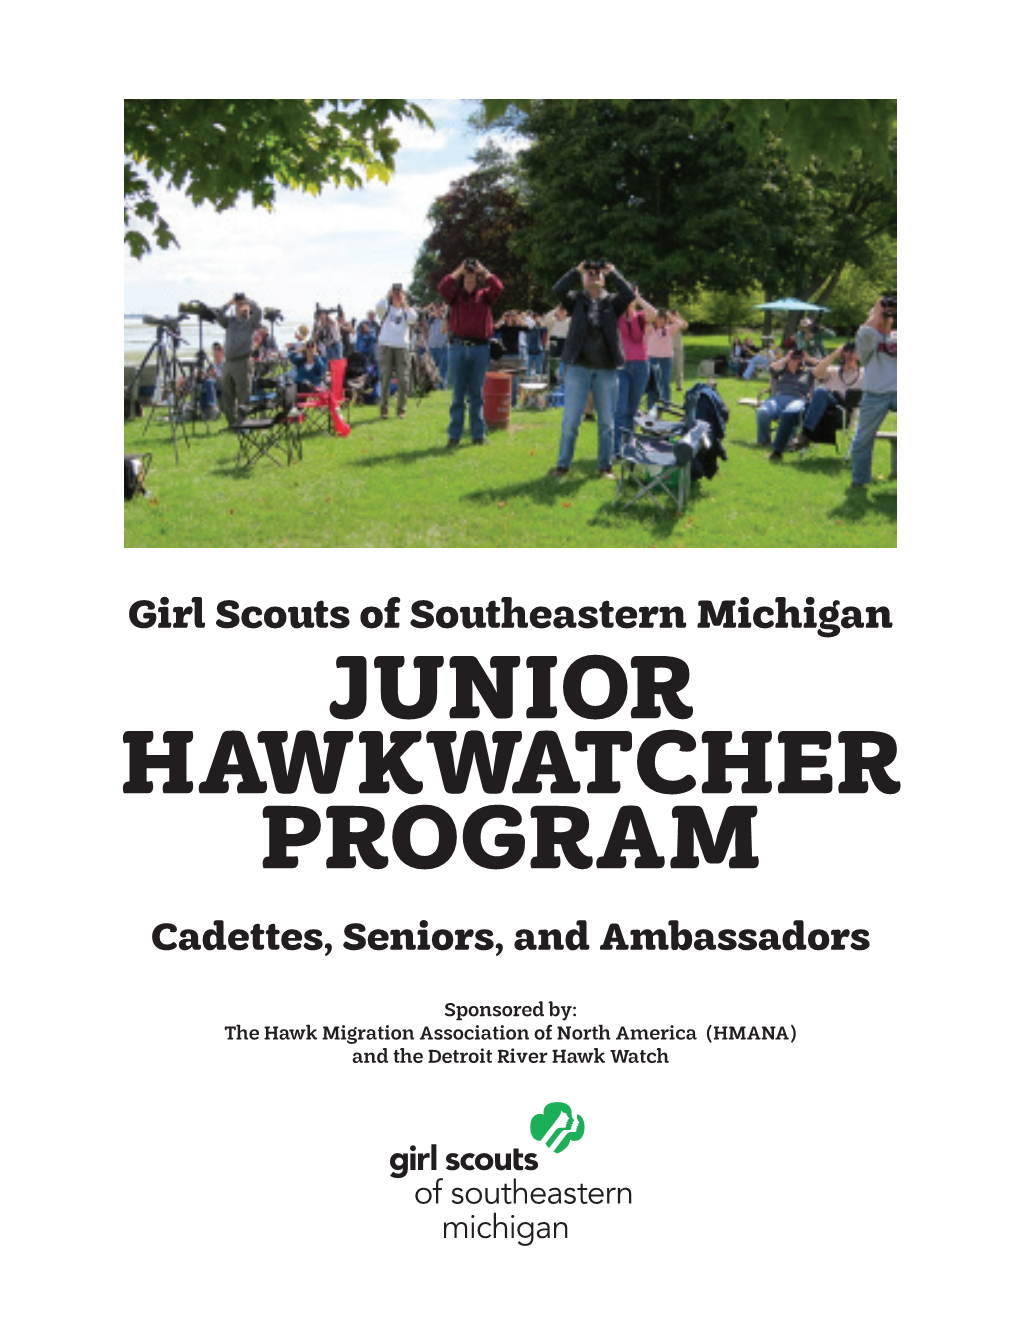 Junior Hawkwatcher Patch Program